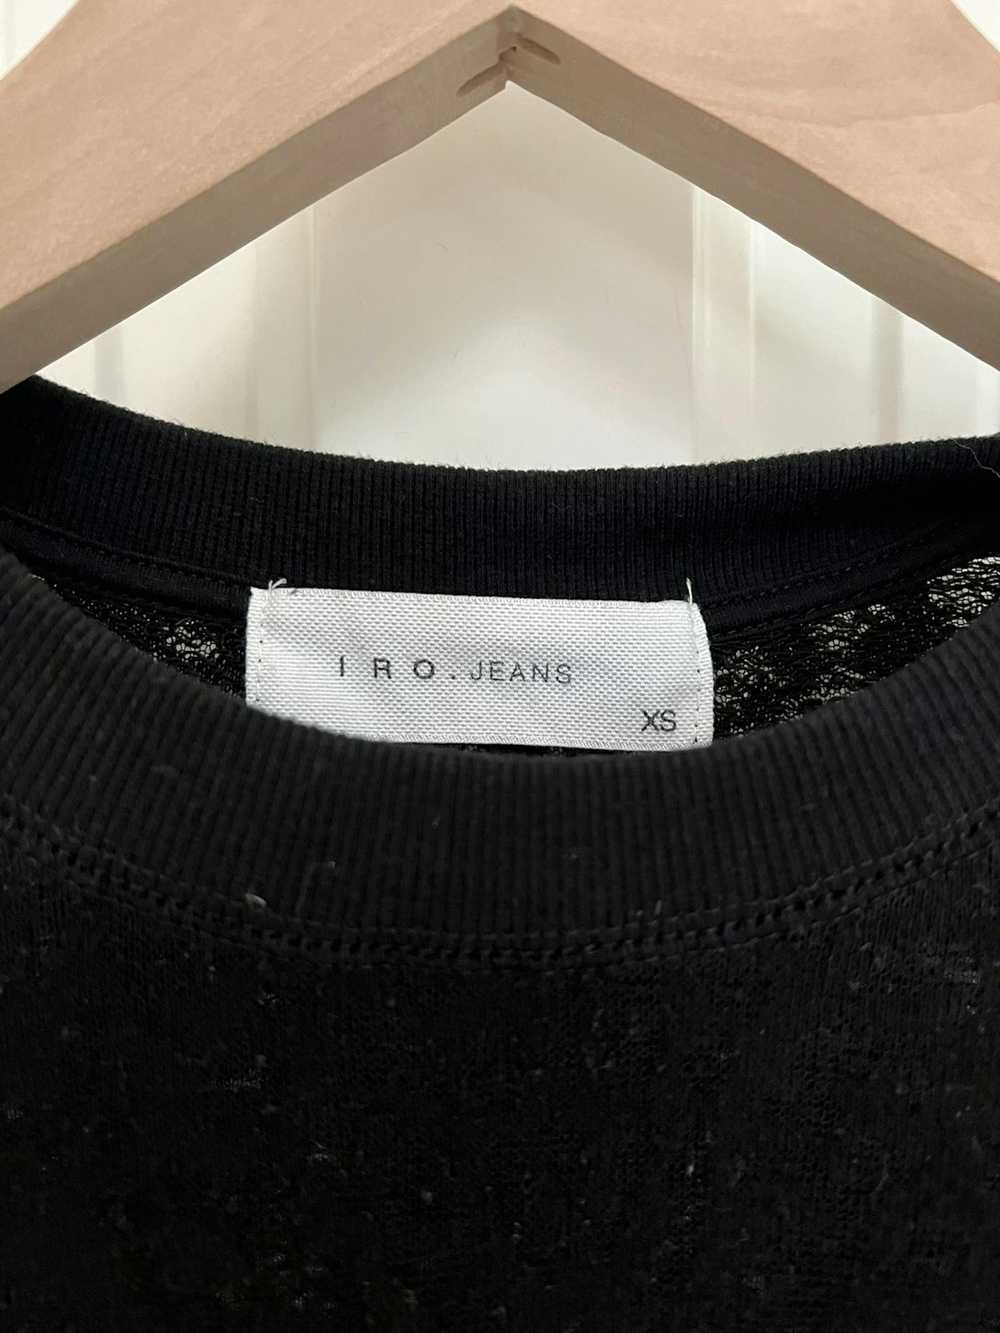 Iro IRO Jeans black sleeveless knitted top XS - image 2